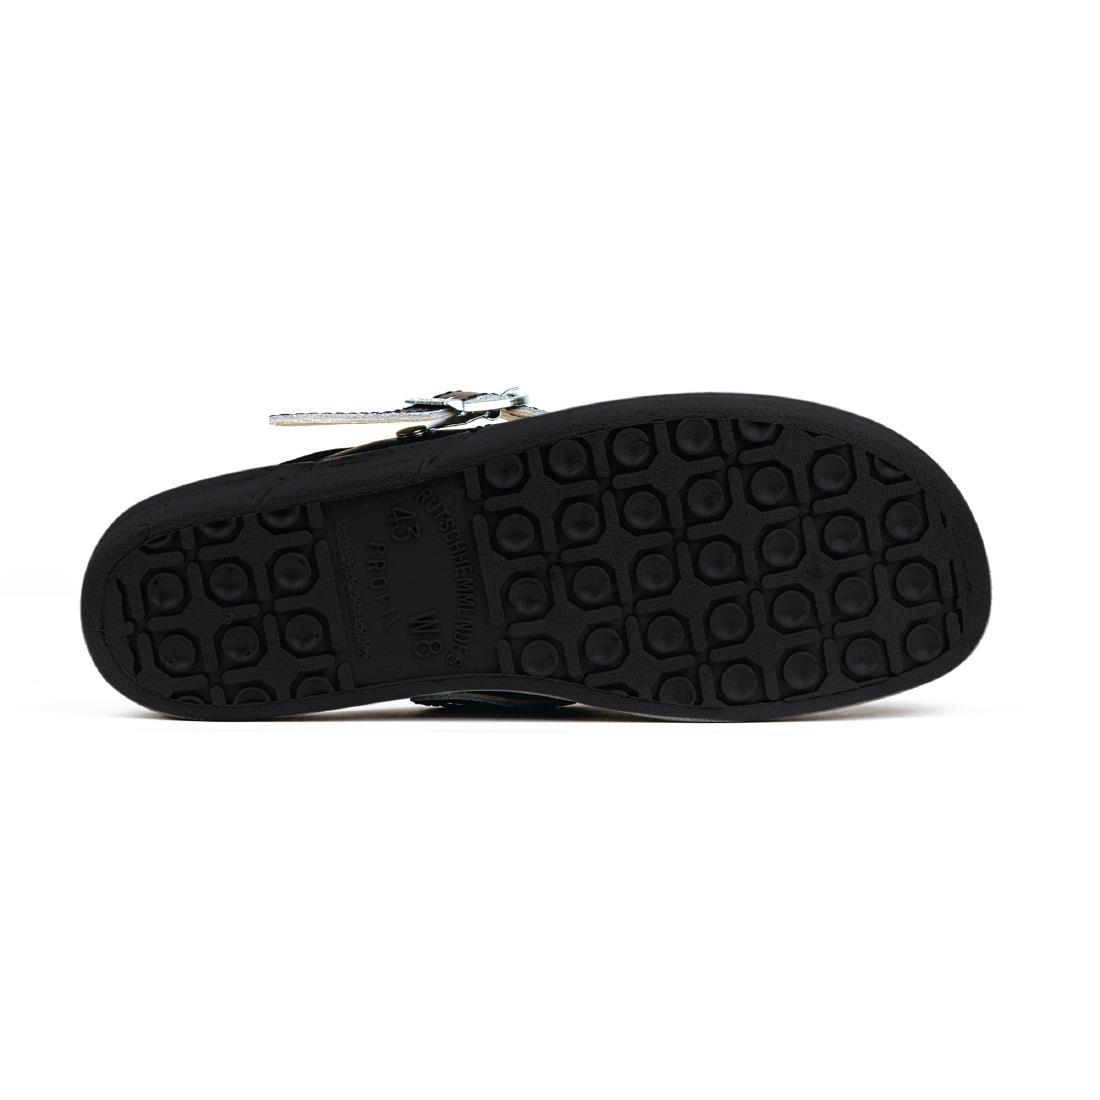 Abeba Microfibre Clogs Black Size 40 - A898-40  - 4